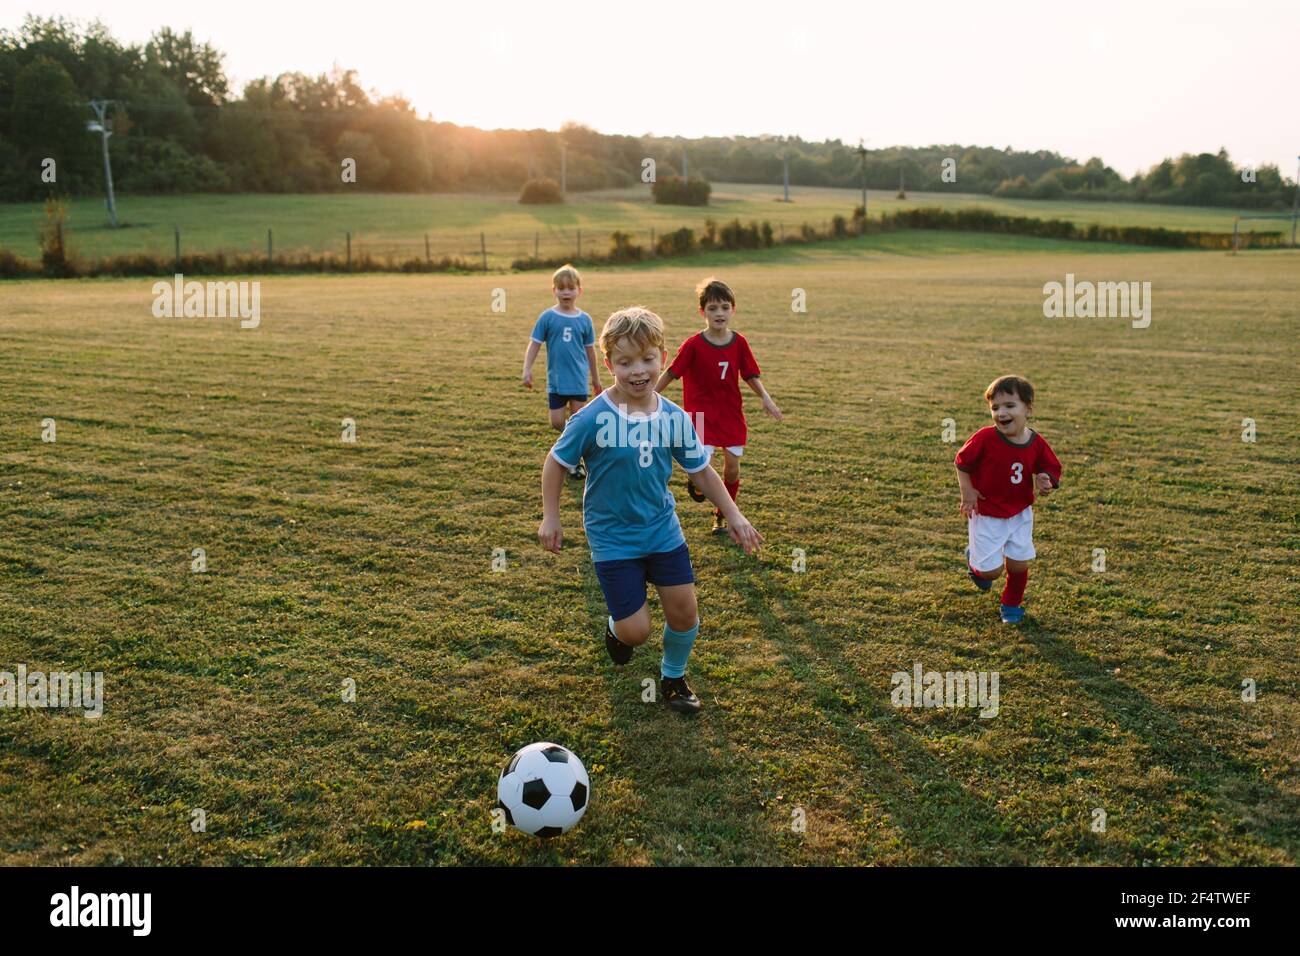 Enfants jouant au football. Des garçons gais dans des robes de football courant après le ballon sur le terrain. Banque D'Images